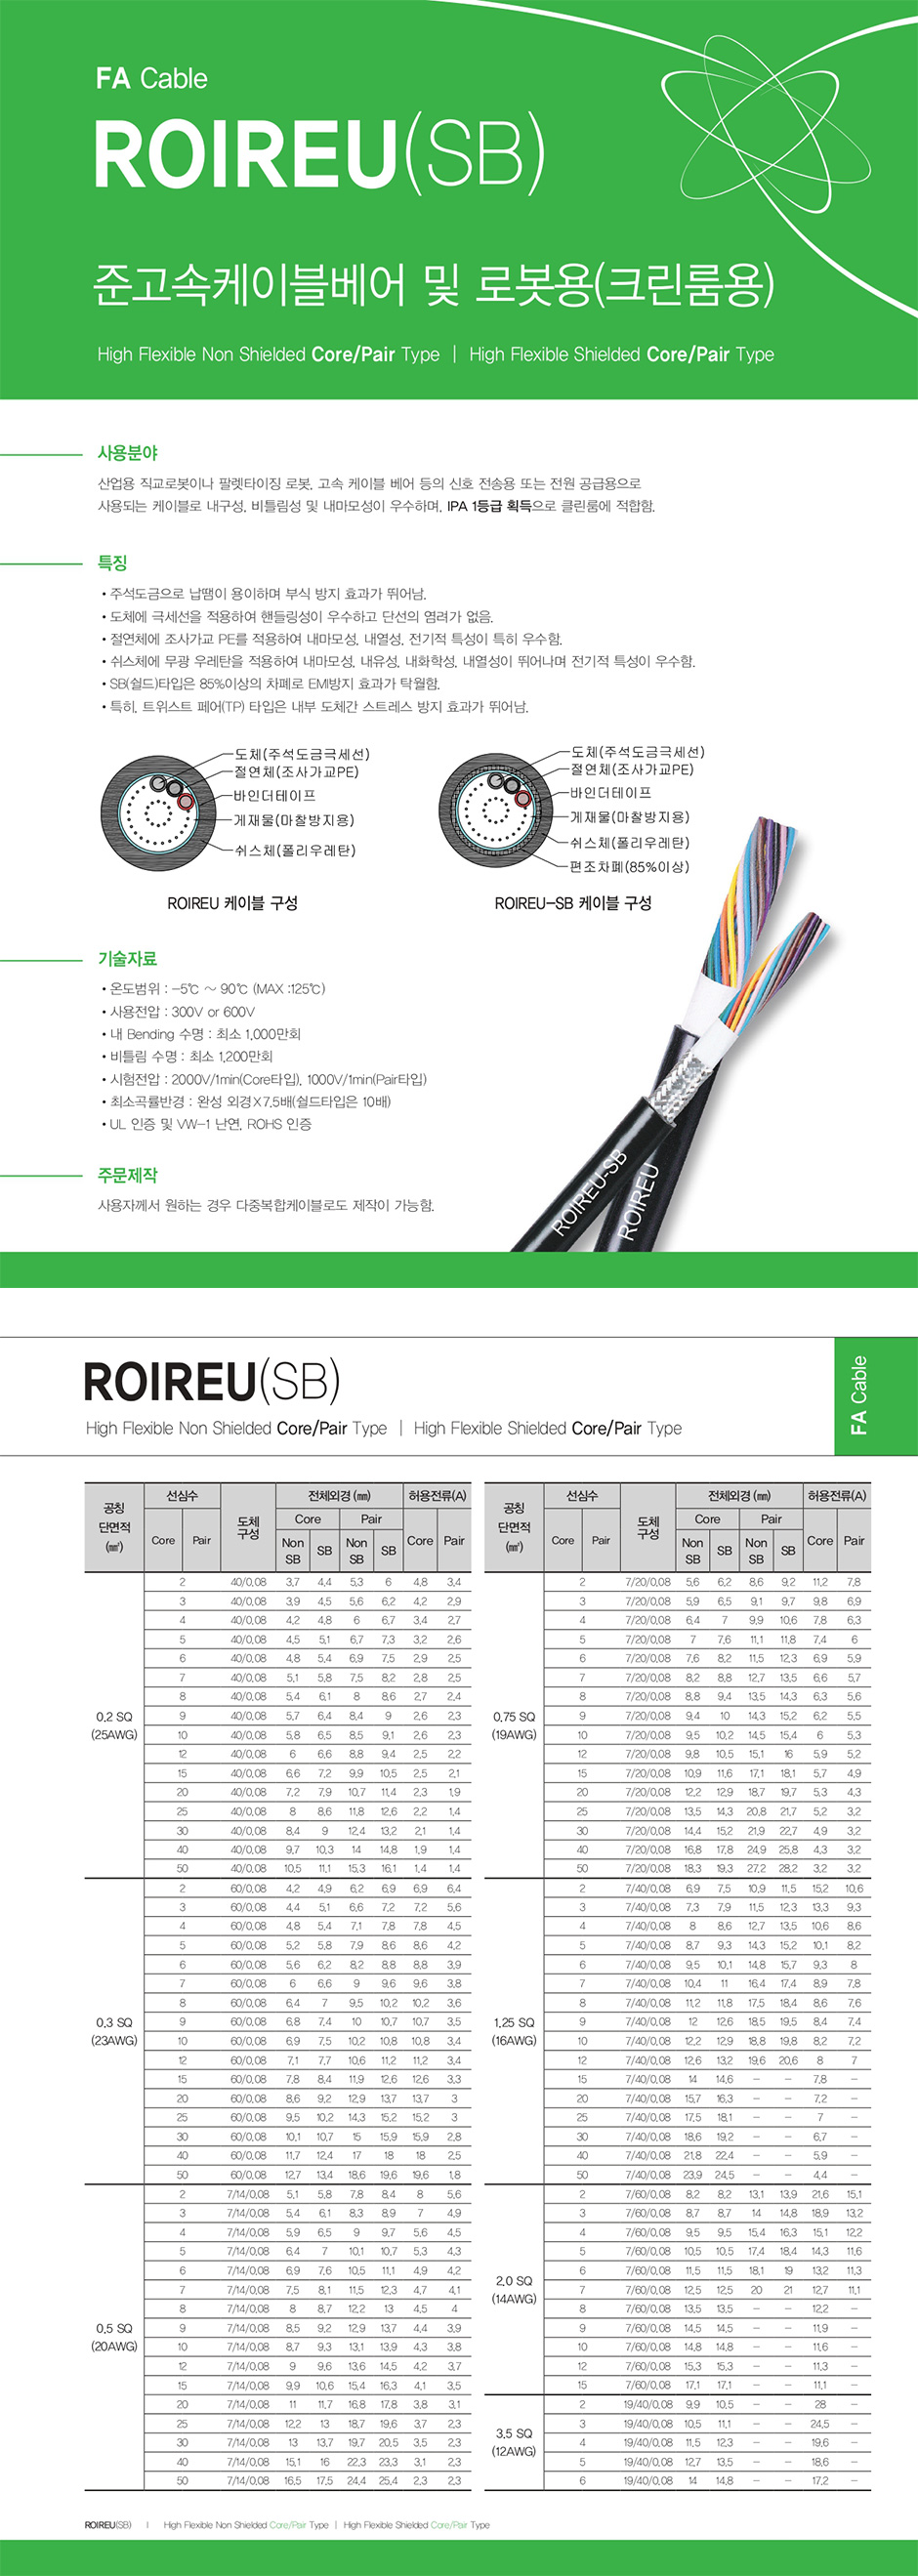 FA Cable : ROIREU(SB)